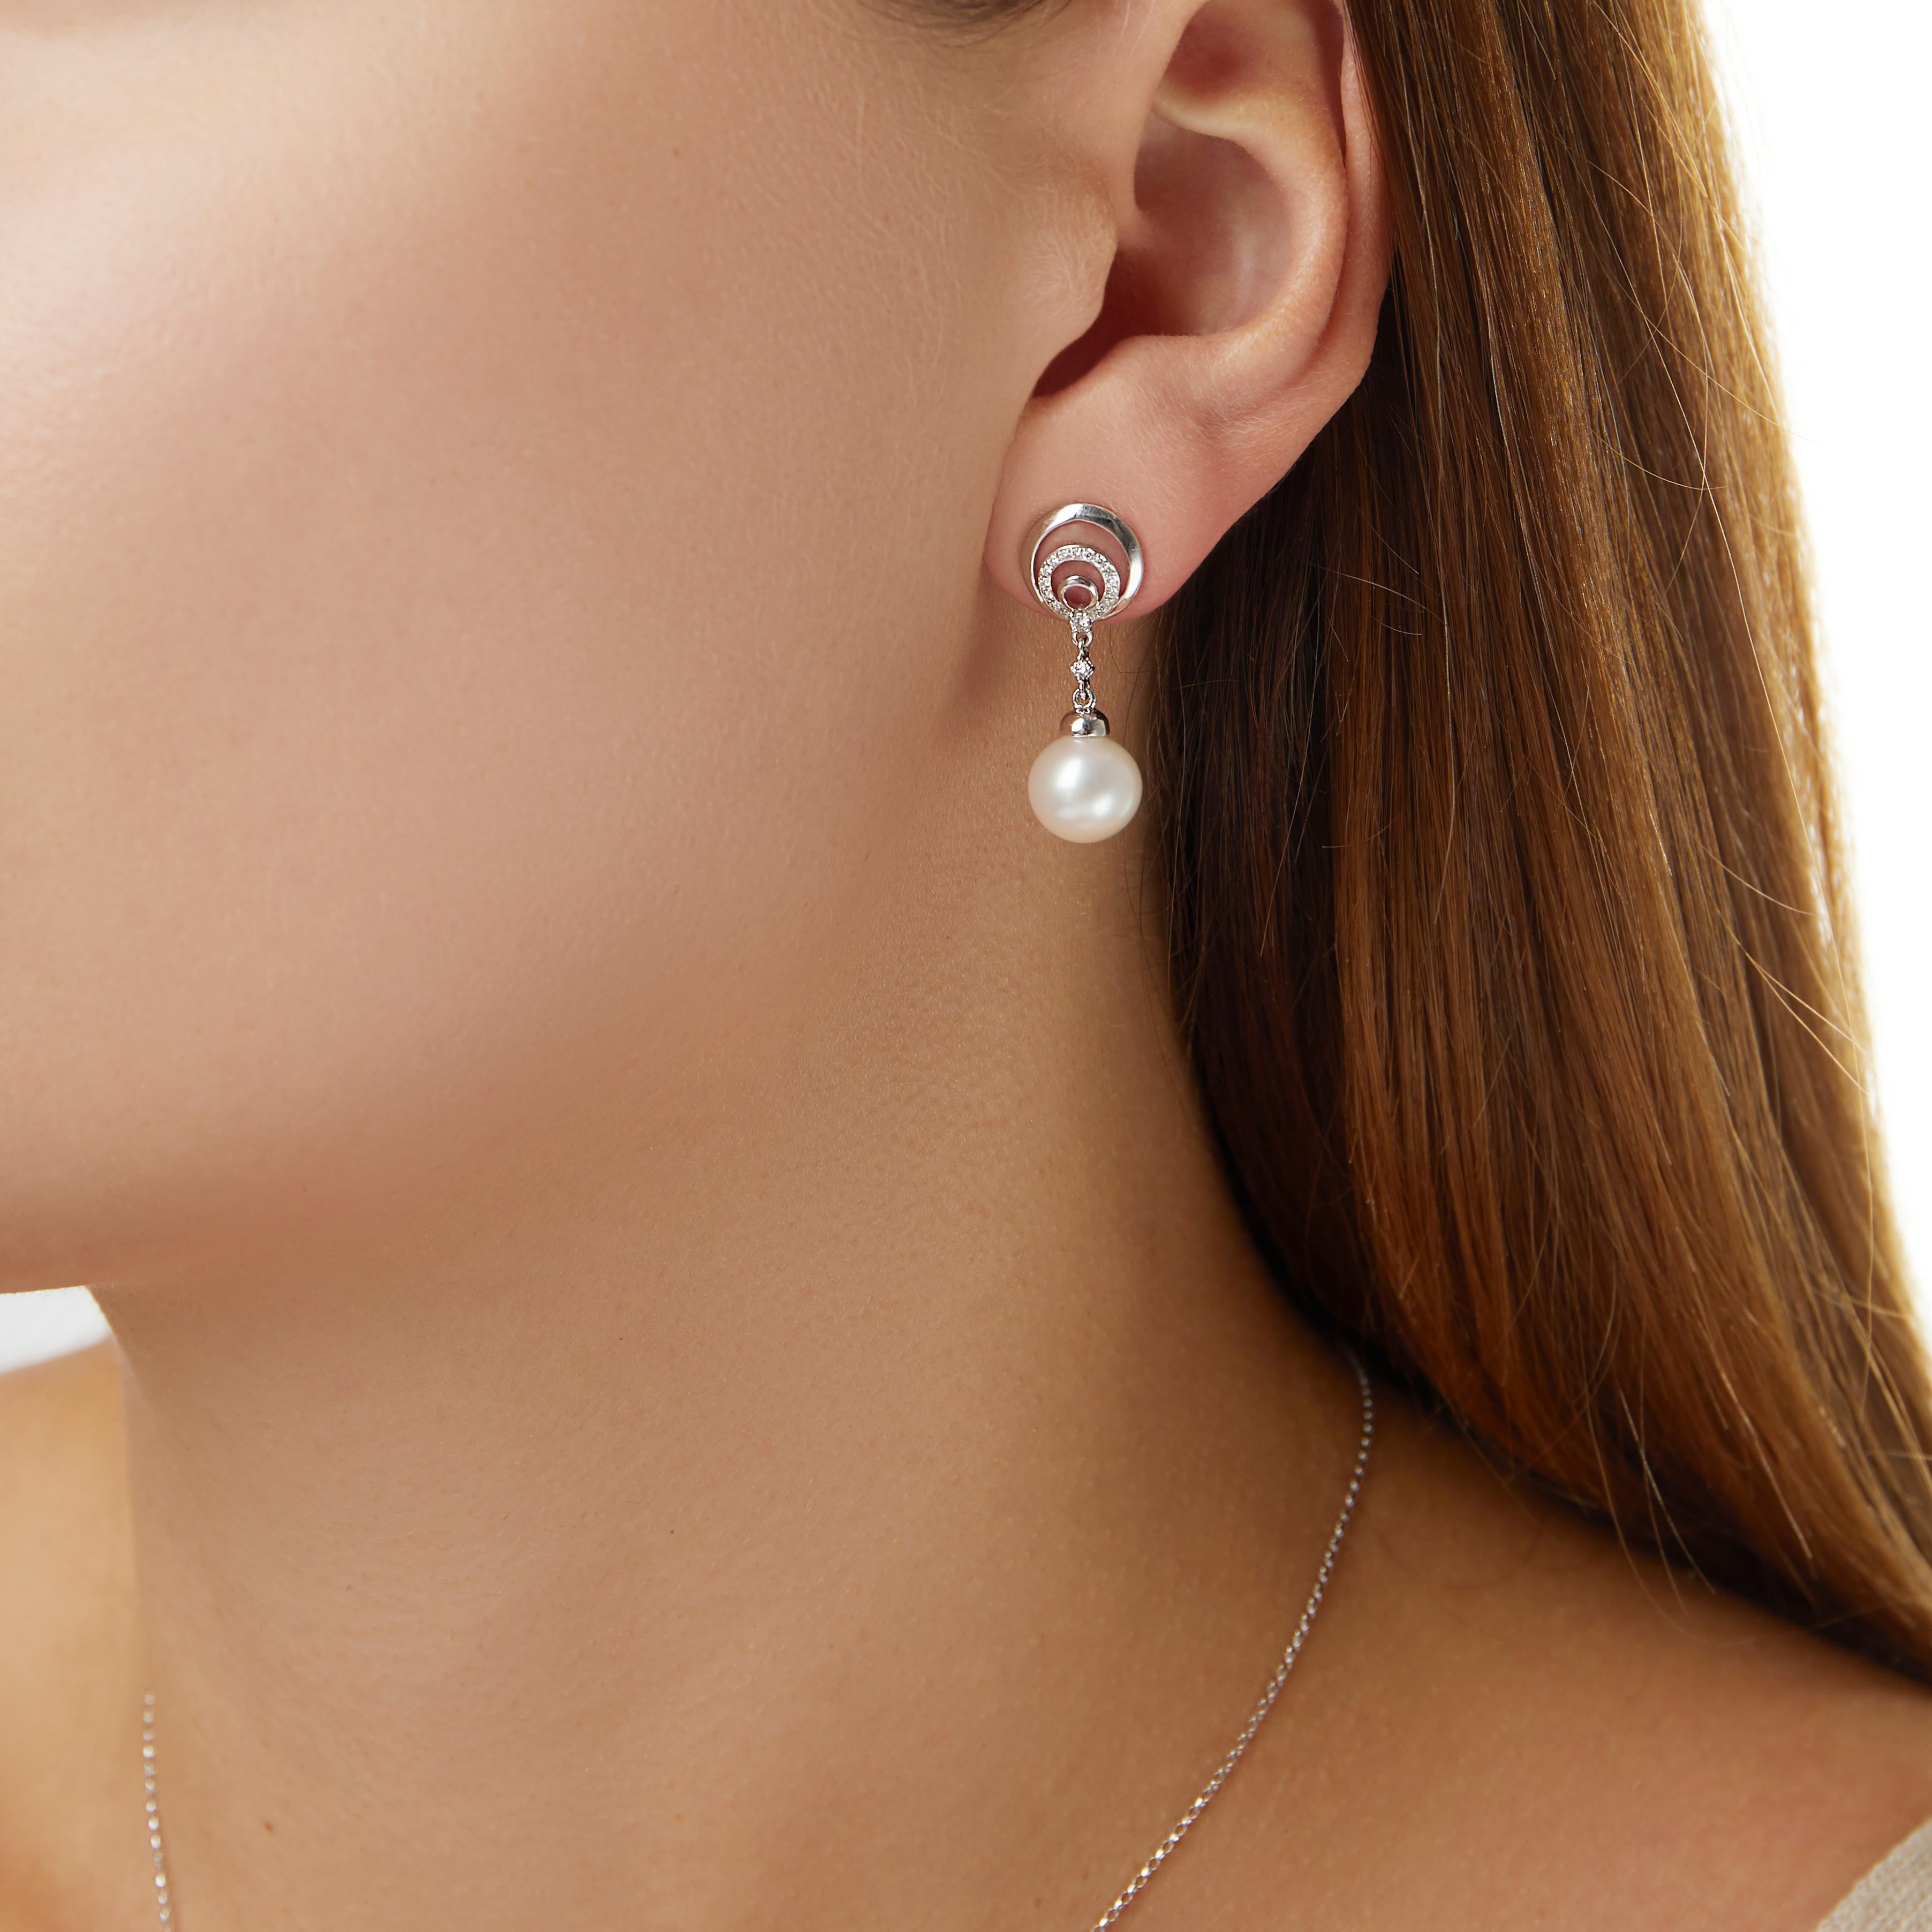 Diese eleganten Ohrringe von Yoko London sind mit schimmernden Süßwasserperlen unter hypnotisierenden Diamantkreisen verziert. Diese einzigartigen Ohrringe wurden von Experten in unserer Londoner Werkstatt handgefertigt und verleihen jedem Outfit